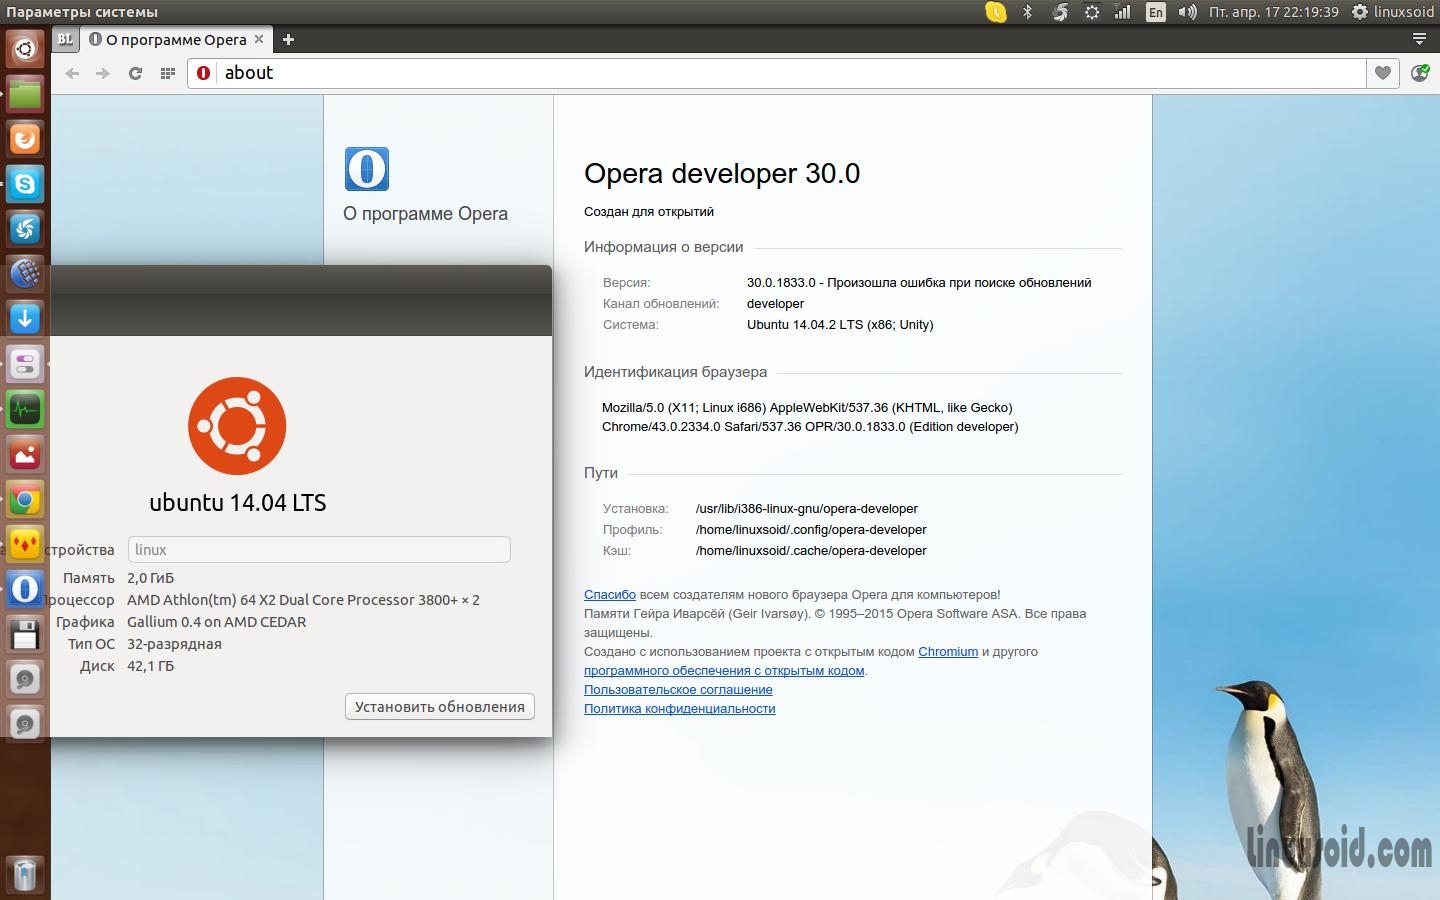 Установка Opera developer 30.0 на 32-bit архитектуре